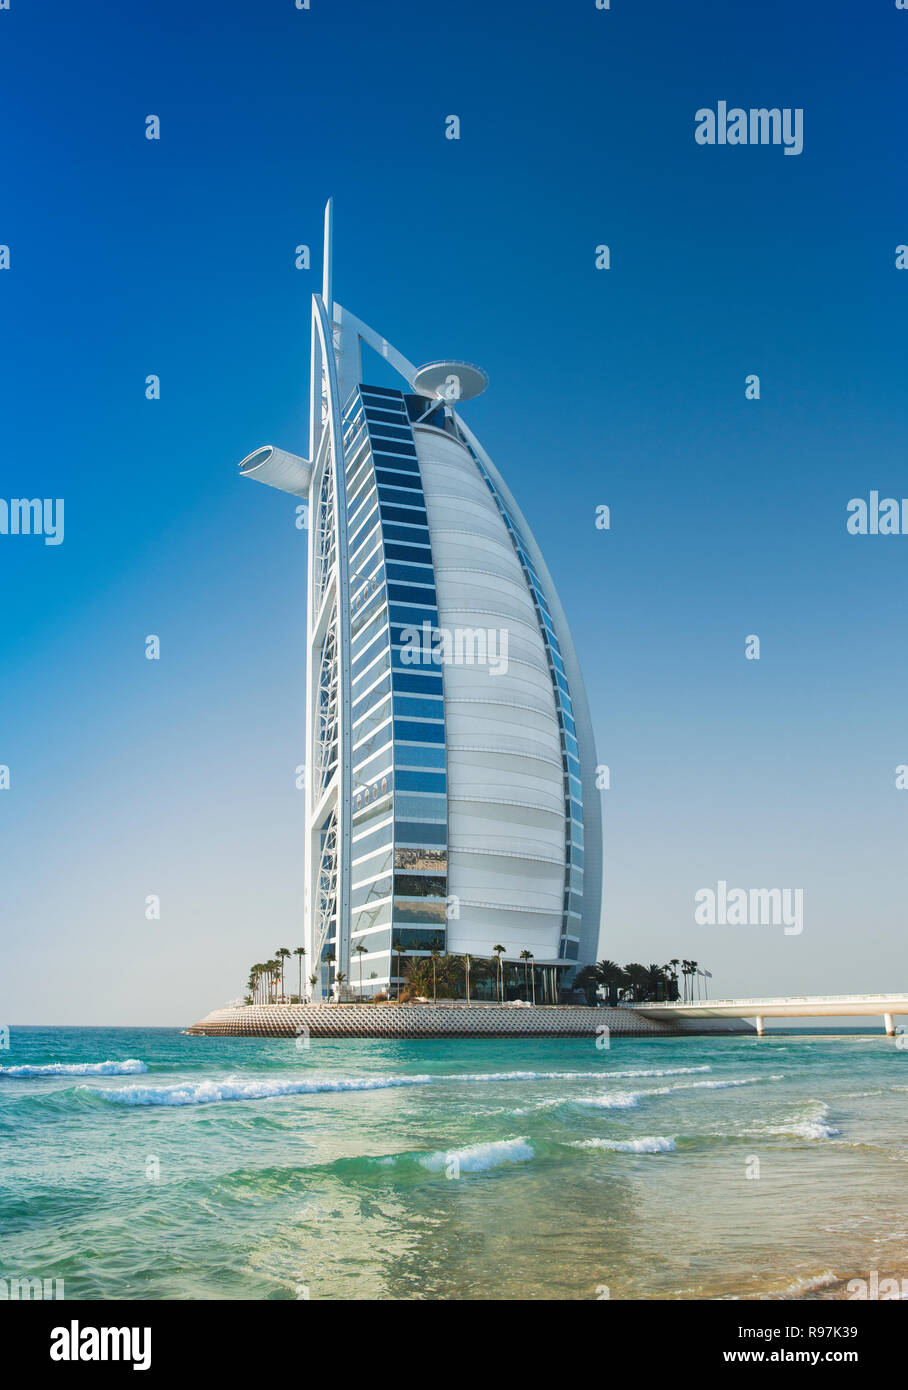 Burj Al Arab, Turm der Araber, ist ein luxuriöses Hotel in Dubai, Vereinigte Arabische Emirate. Es steht auf einer künstlichen Insel von Jumeirah Beach. Stockfoto